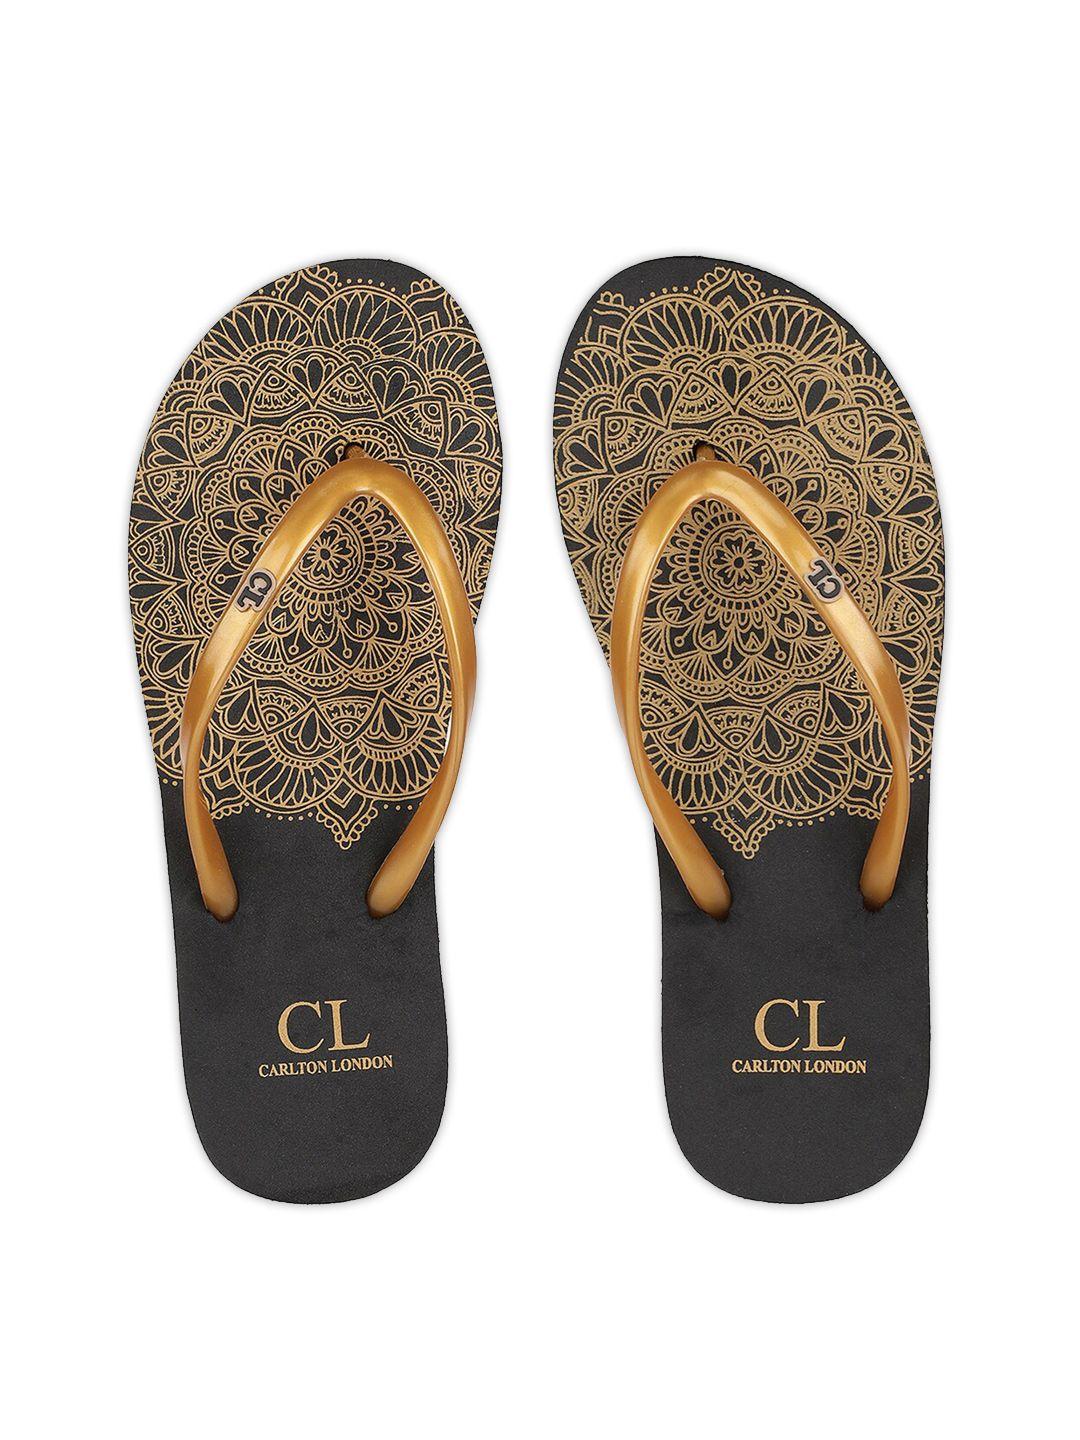 carlton london women gold-toned & black printed thong flip-flops